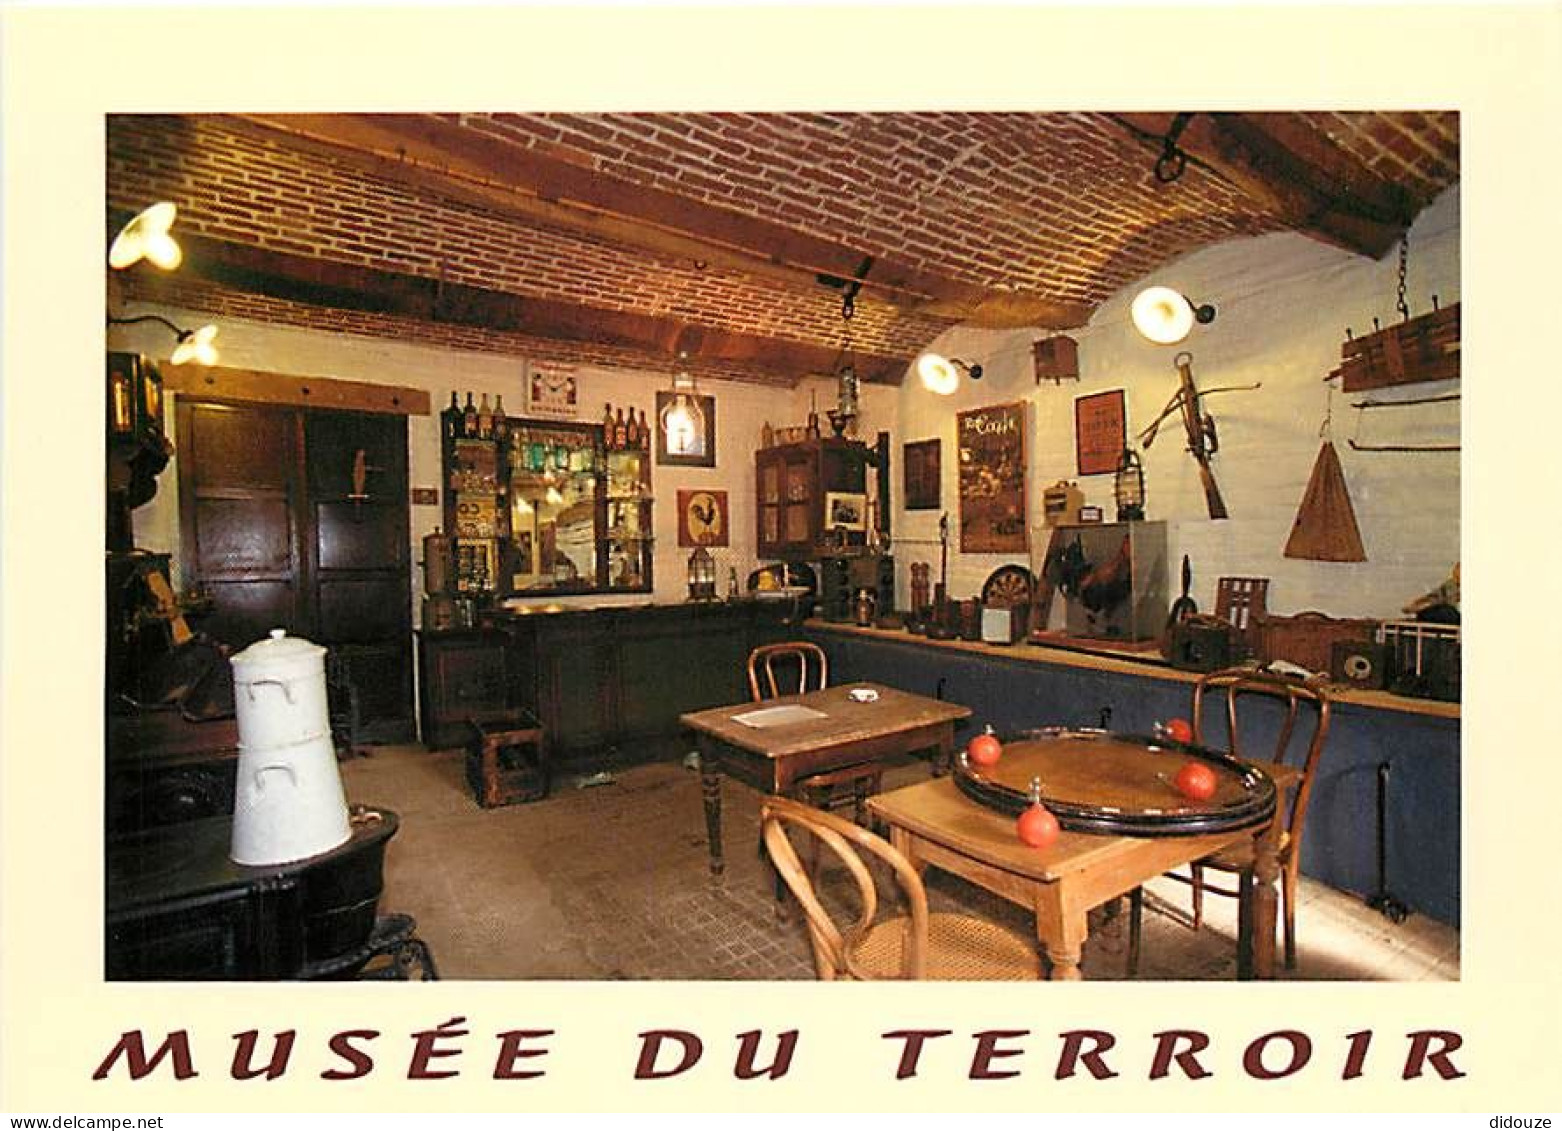 59 - Villeneuve D'Ascq - Le Musée Du Terroir - L'estaminet Et Les Jeux Traditionnels Au Début Du Xxe Siècle - CPM - Voir - Villeneuve D'Ascq